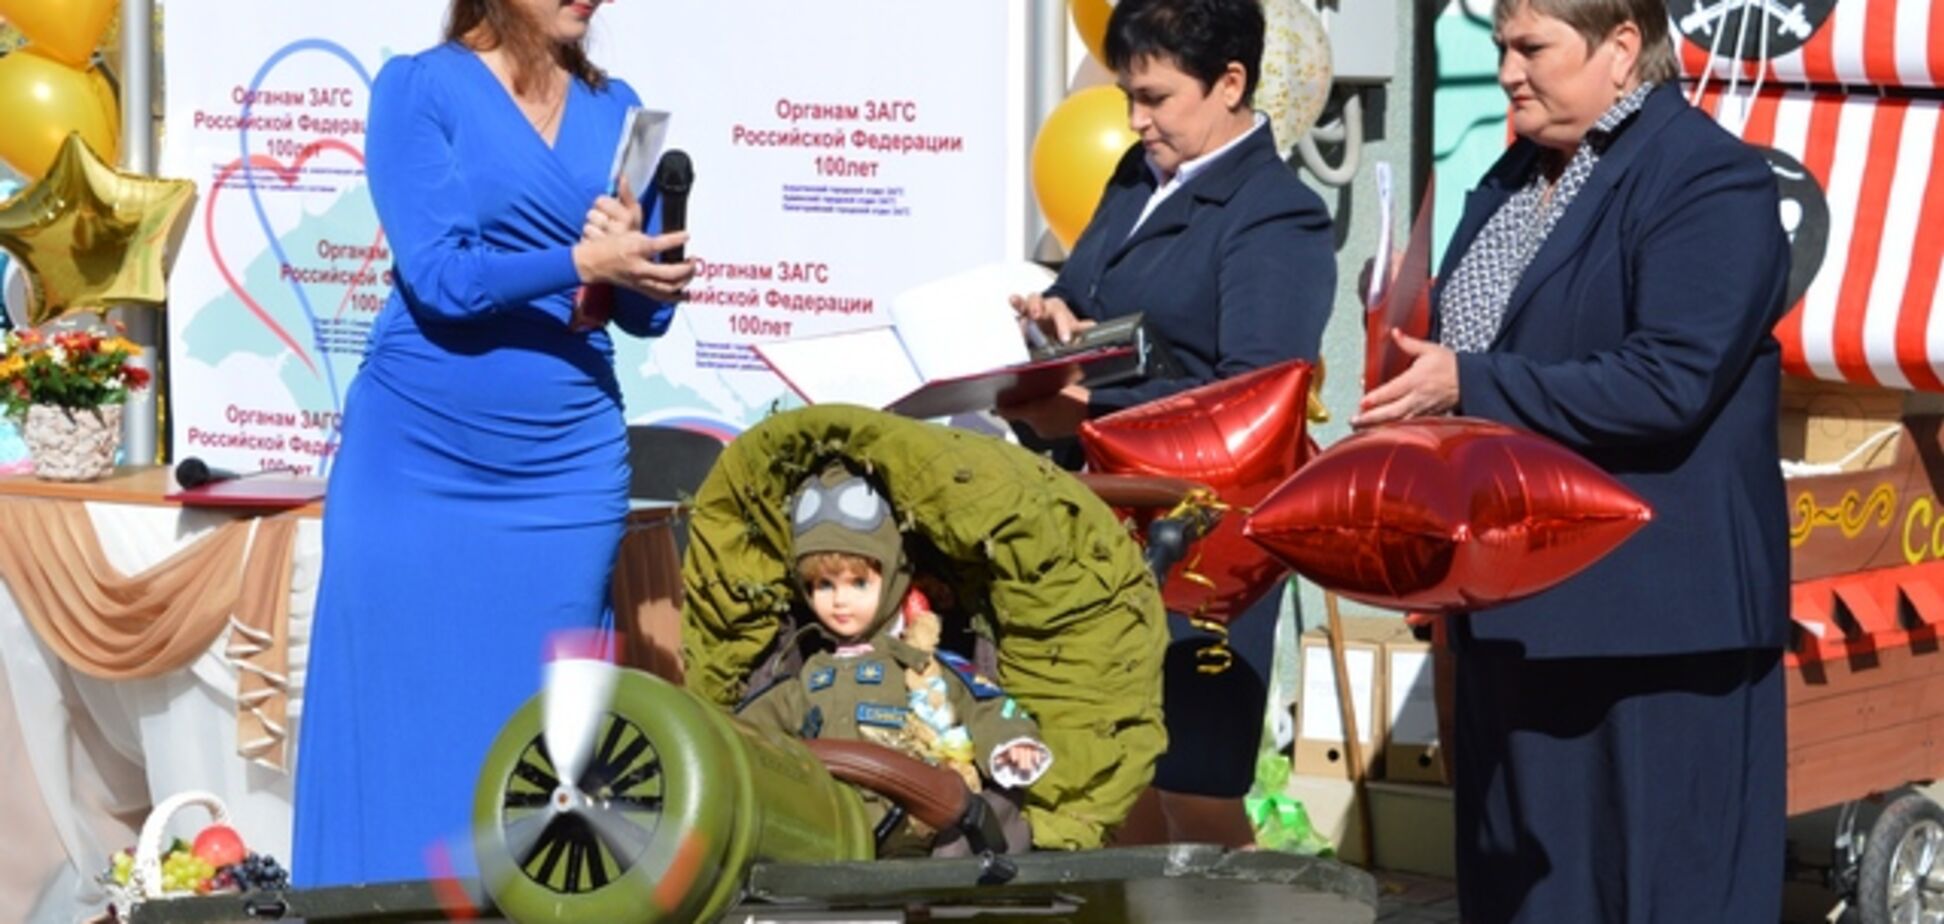 С игрушечными похоронками: в сети высмеяли парад детских колясок в Крыму